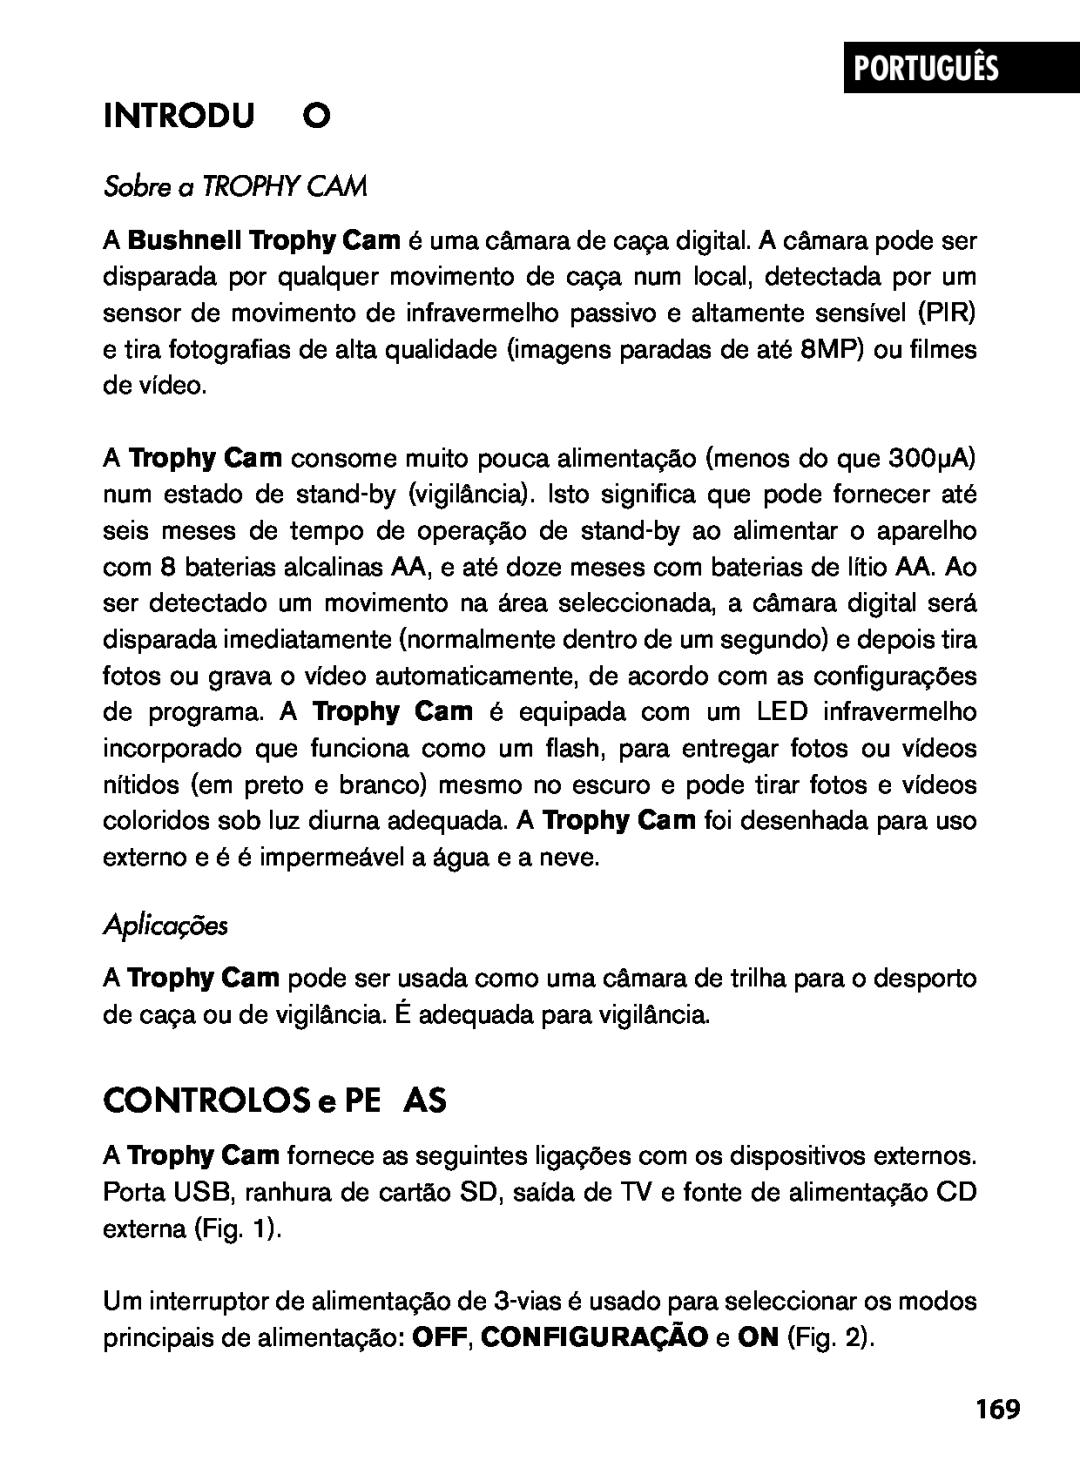 Bushnell 119445, 119455, 119435 instruction manual Introdução, CONTROLOS e PEÇAS, Português, Sobre a TROPHY CAM, Aplicações 